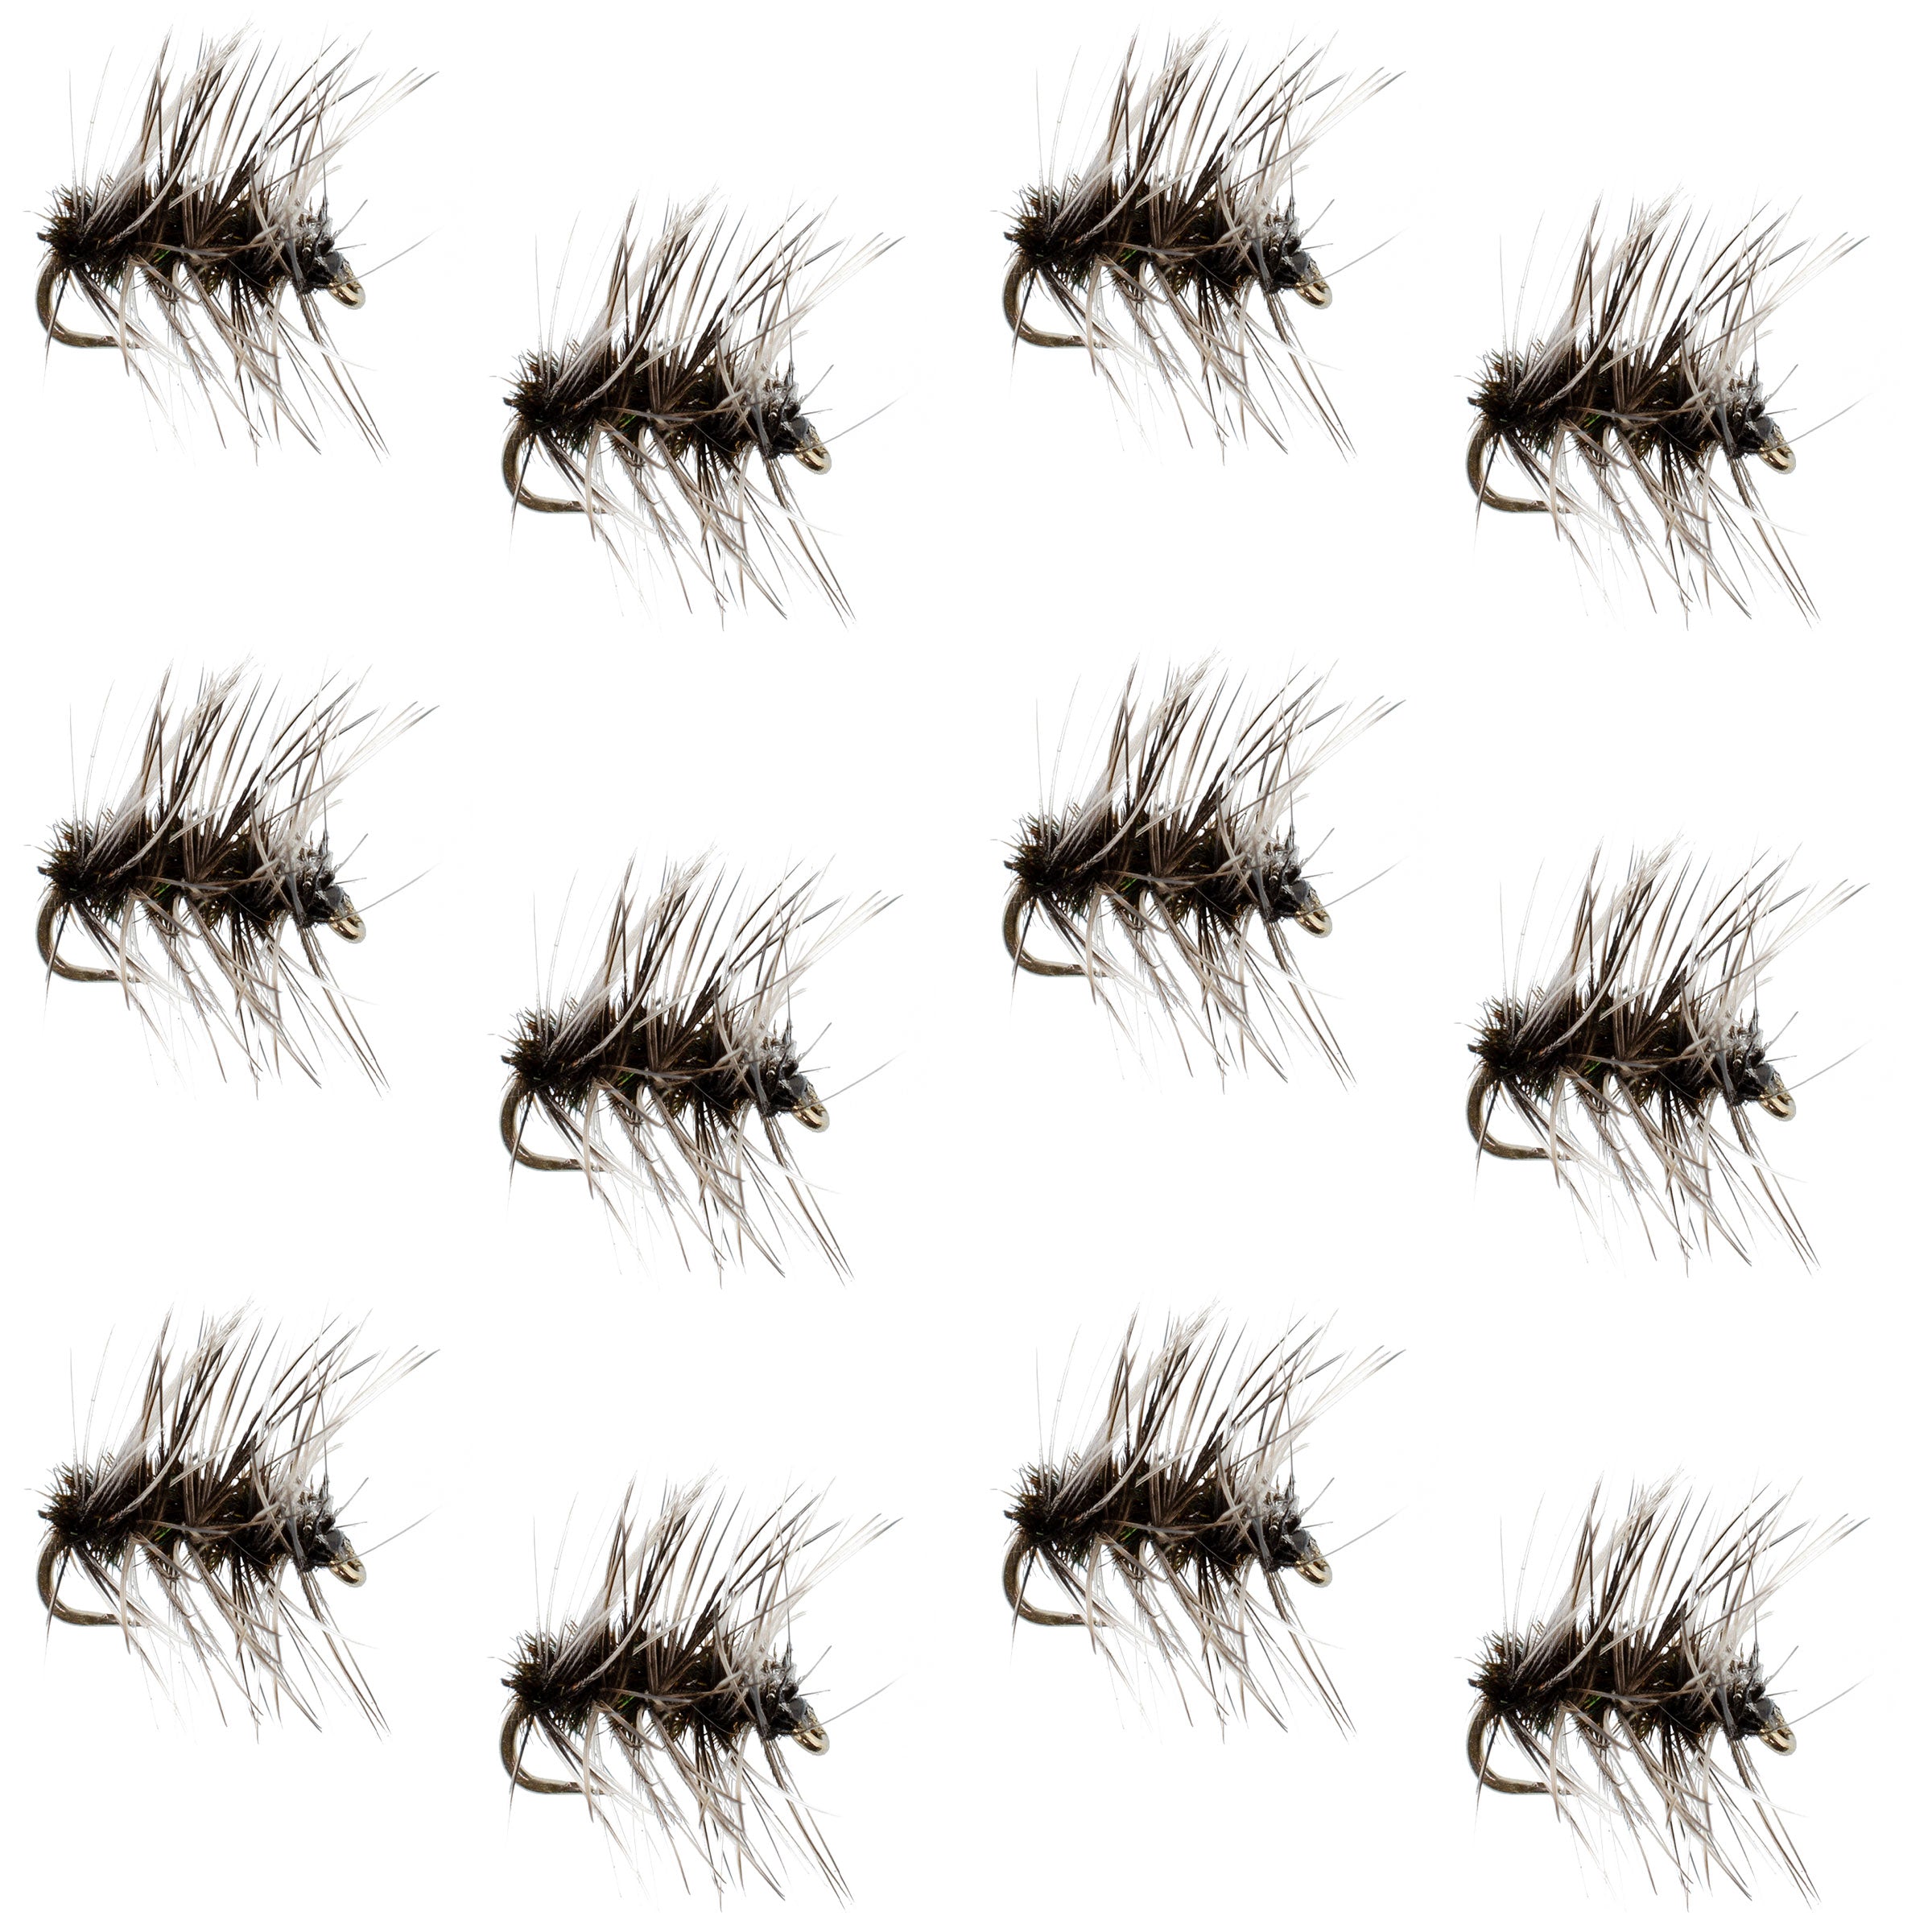 Griffiths Gnat Midge Trout Dry Fly Fishing Flies - 1 Dozen Flies Size 20